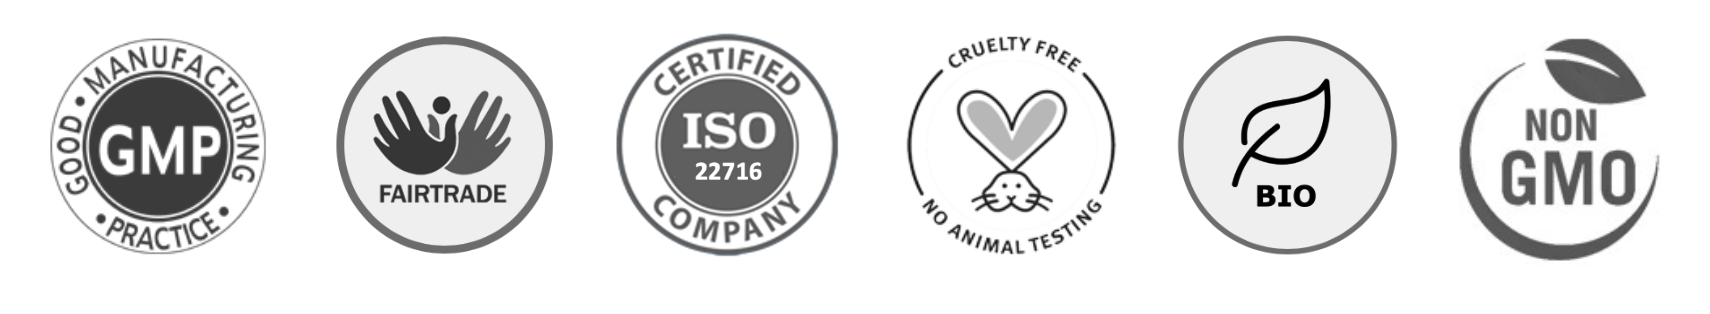 PhytoVero icons: GMP, Fairtrade, ISO22716, cruelty free, bio und non GMO